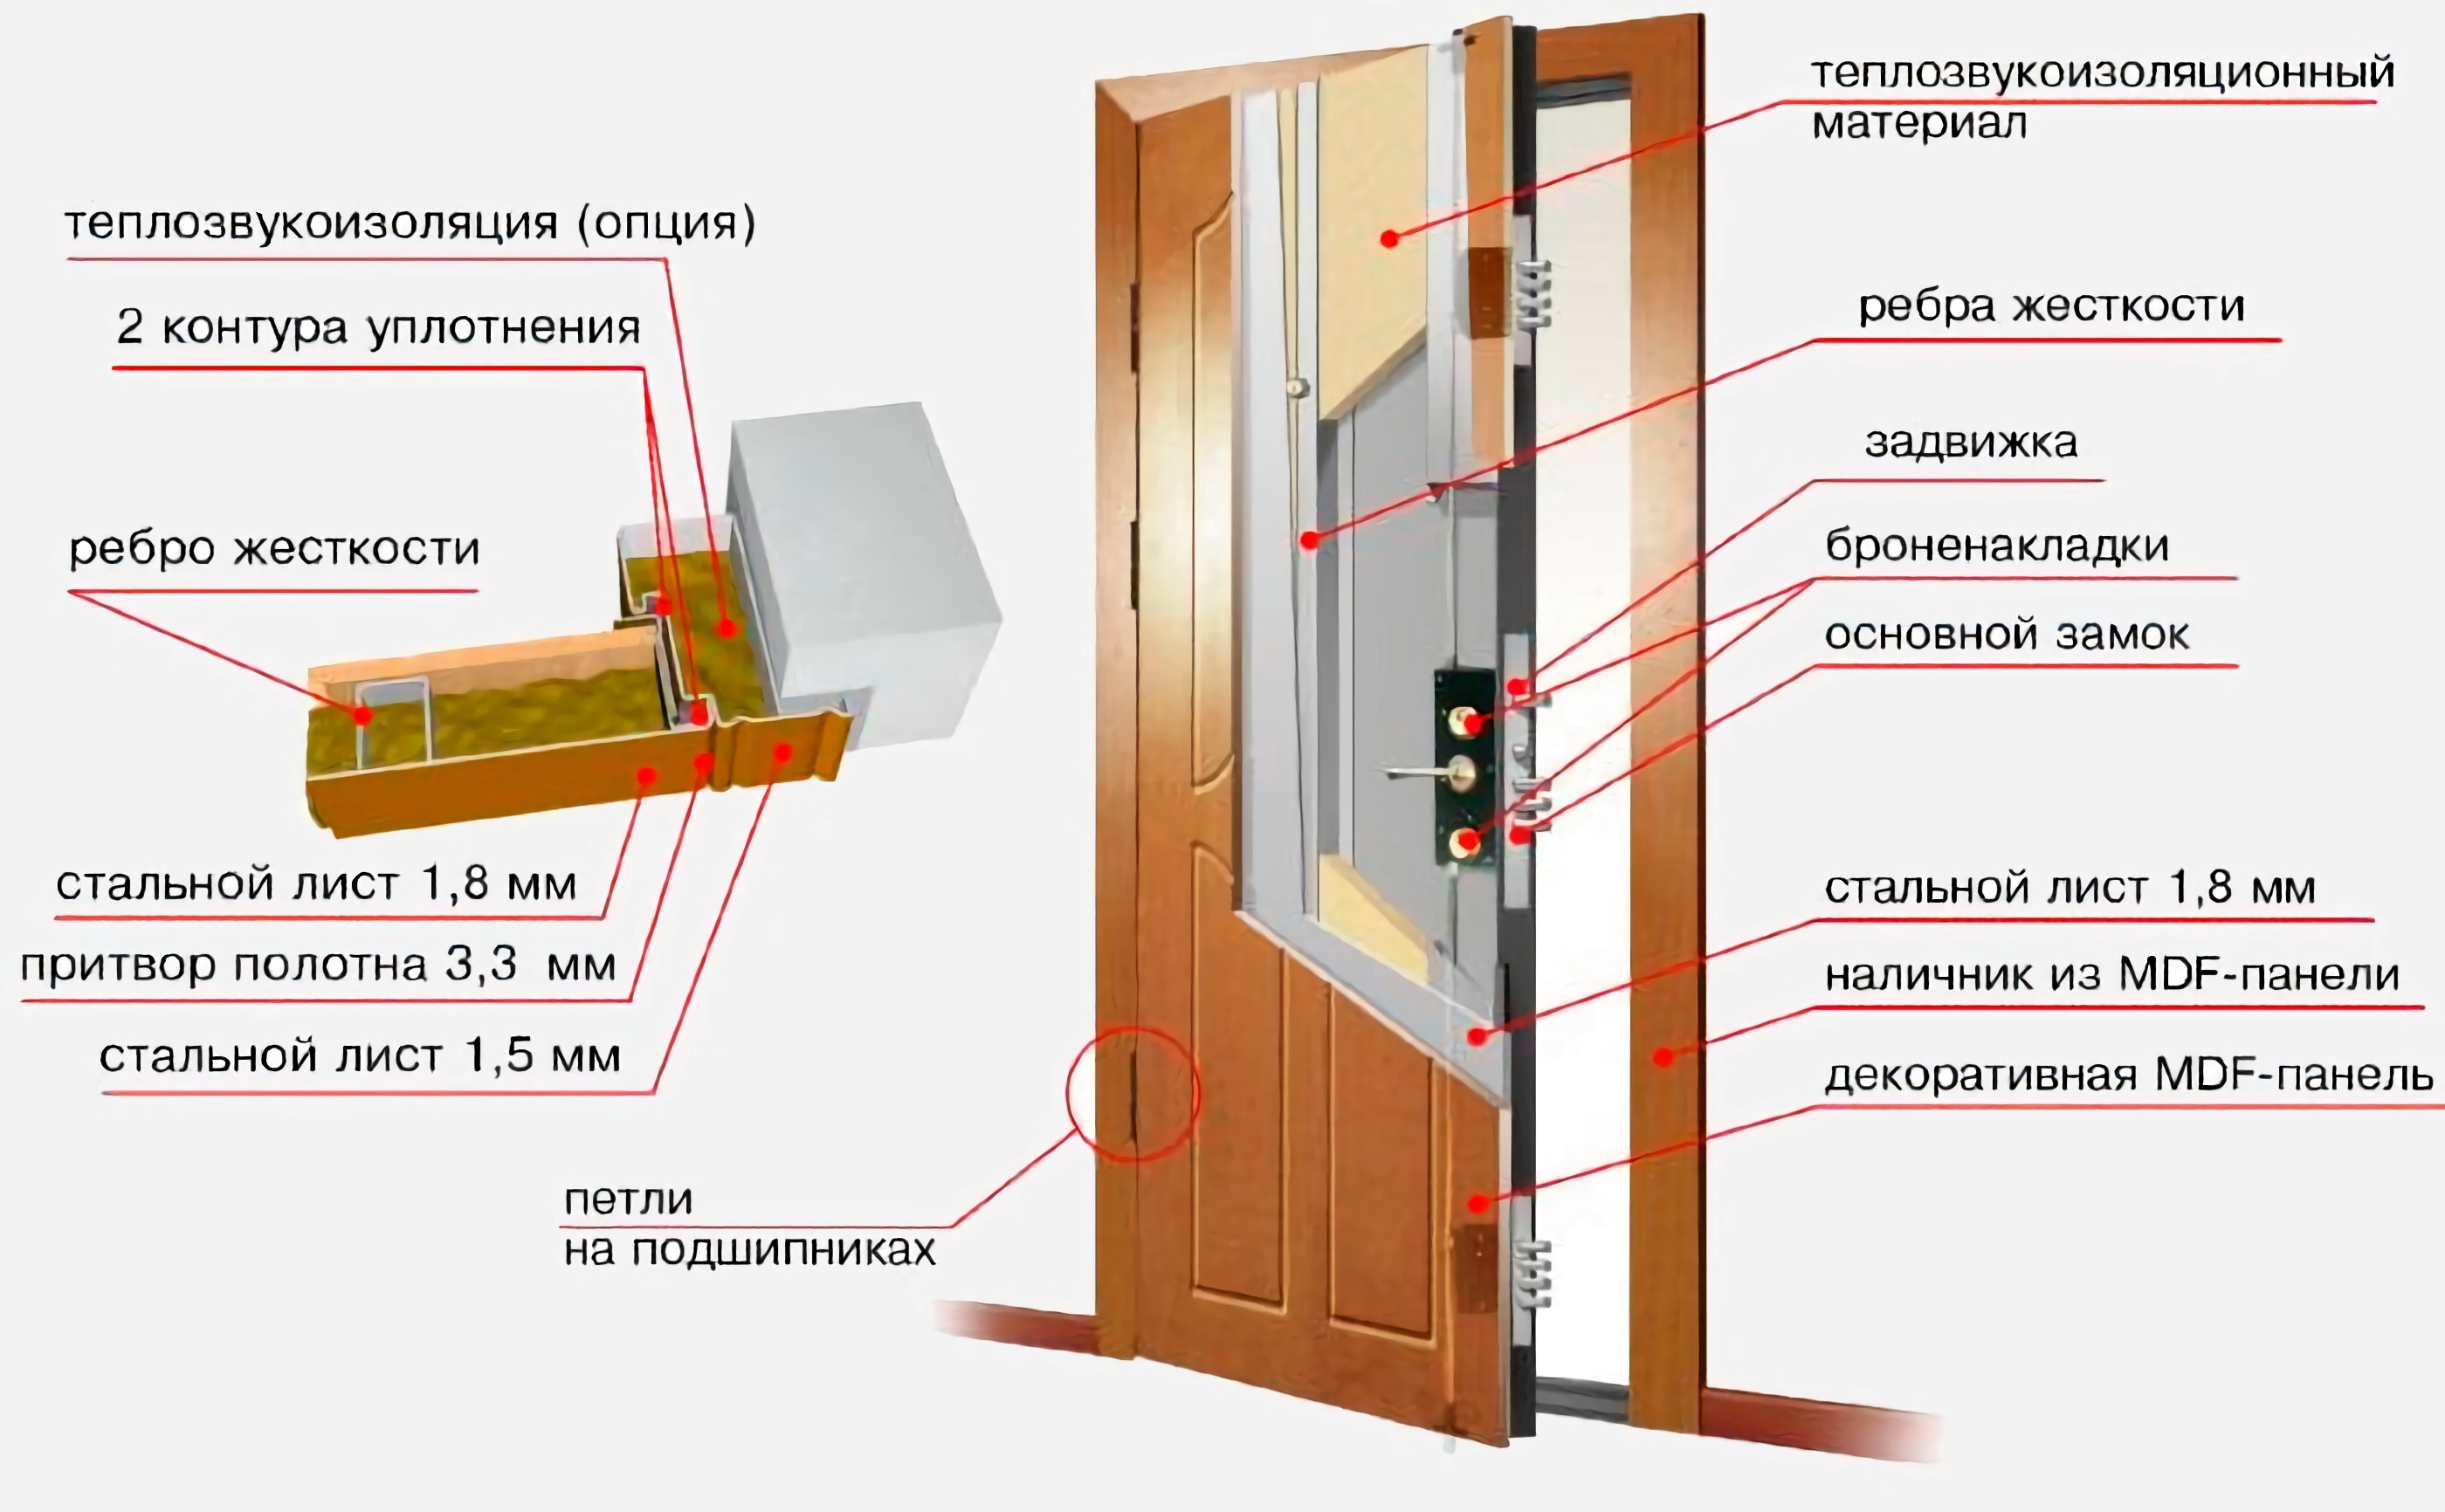 Звукоизоляция входной двери в квартире. Двери с притвором схема. Дверь с притвором шумоизоляционная чертеж. Схема утепление входной деревянной двери. Железные двери входные для квартиры с шумоизоляцией и теплоизоляцией.